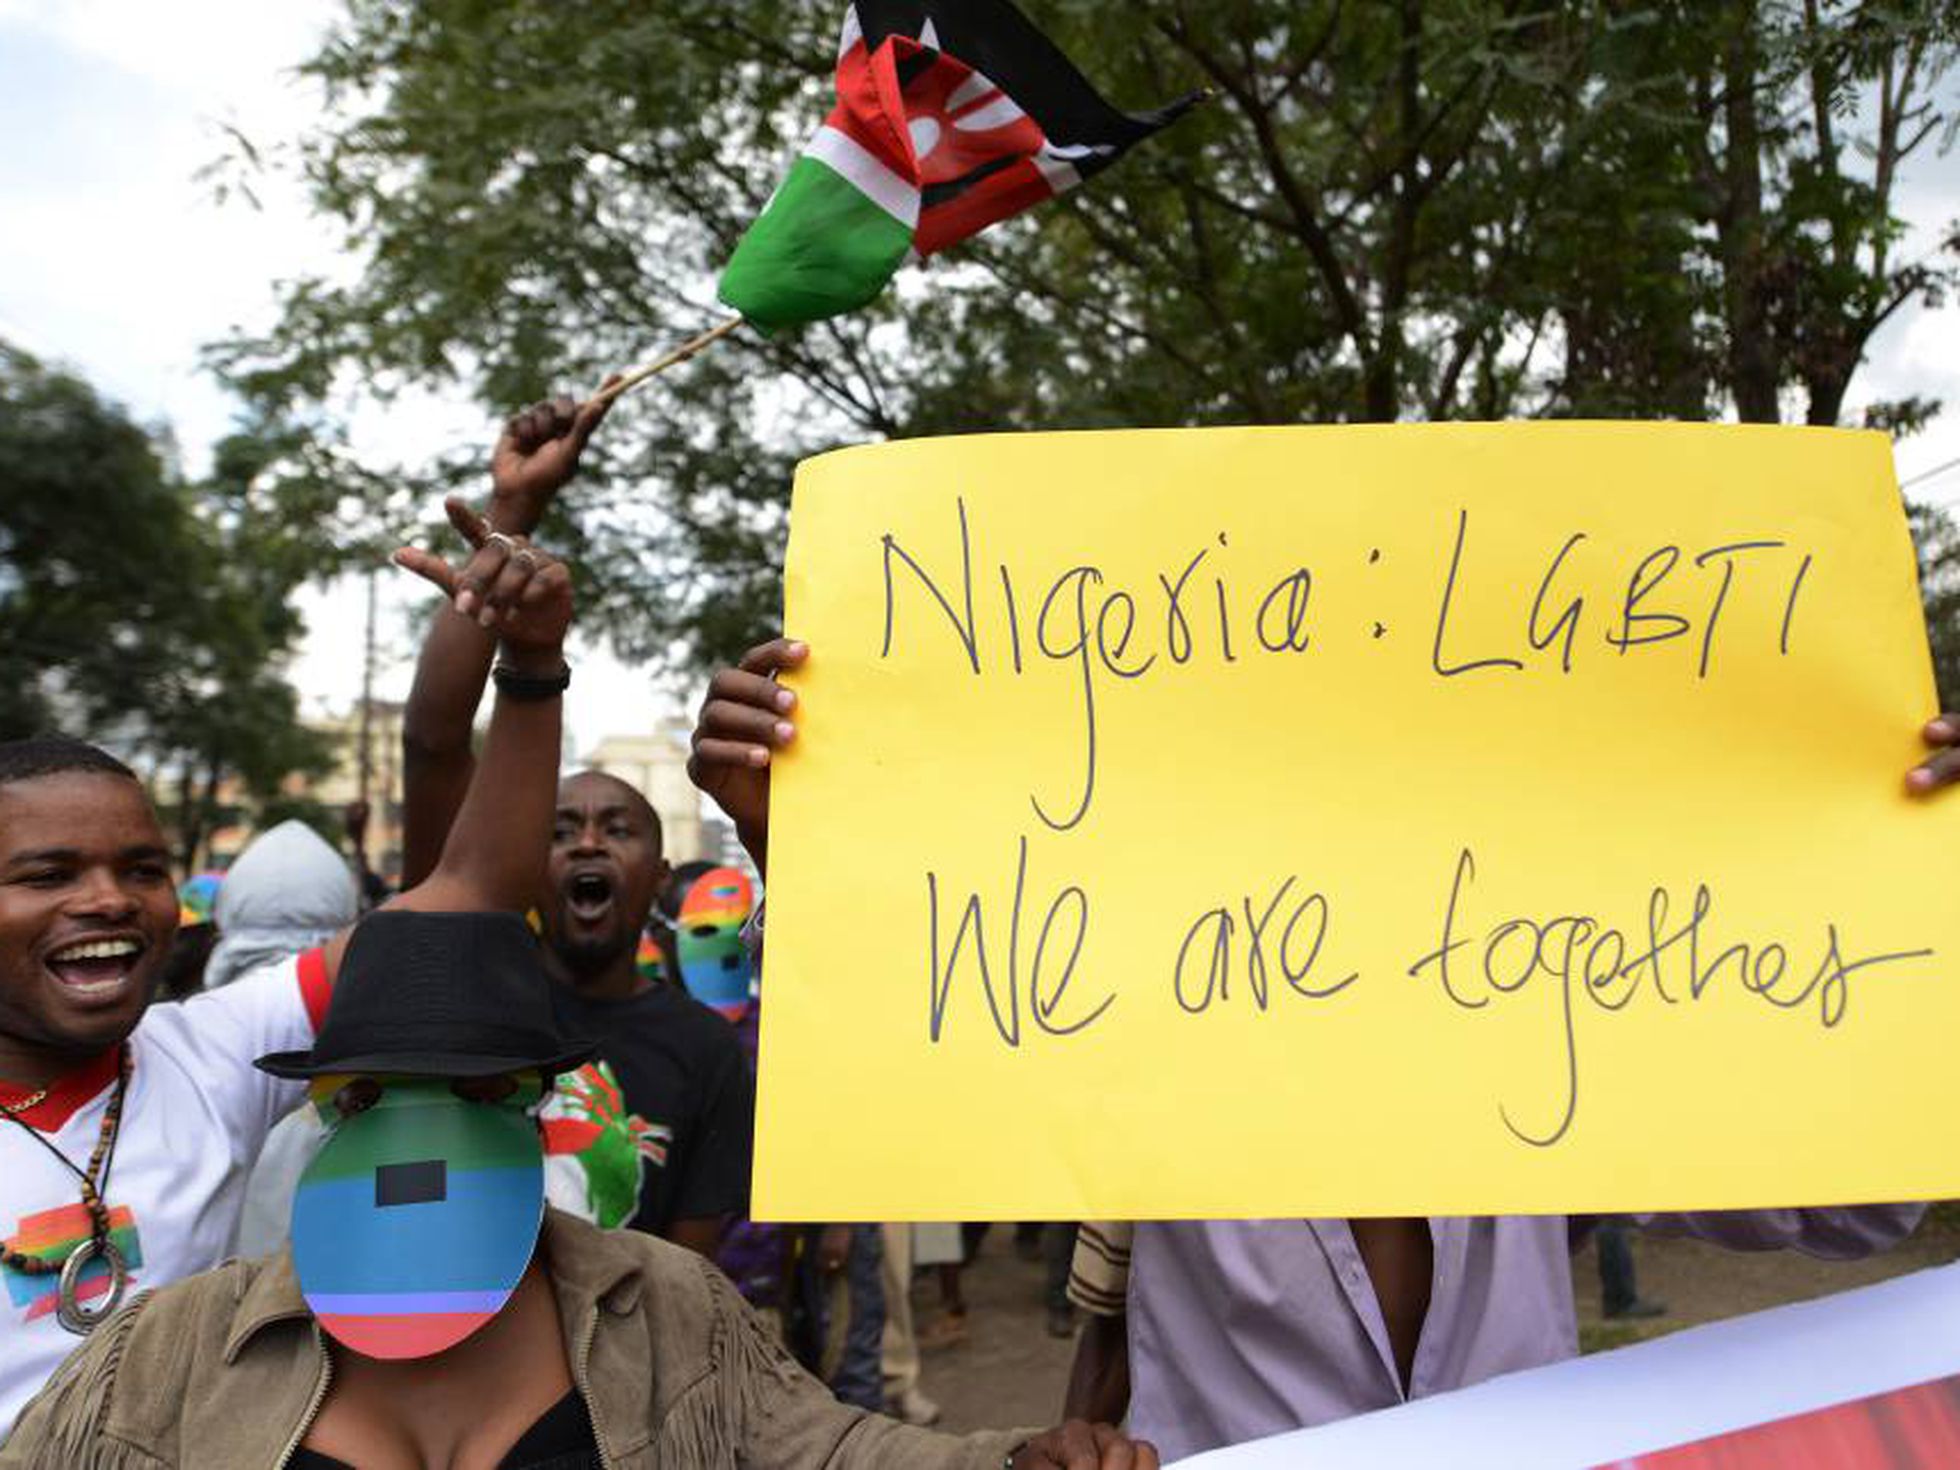 Dictan pena de muerte a tres hombres en Nigeria por ser homosexuales